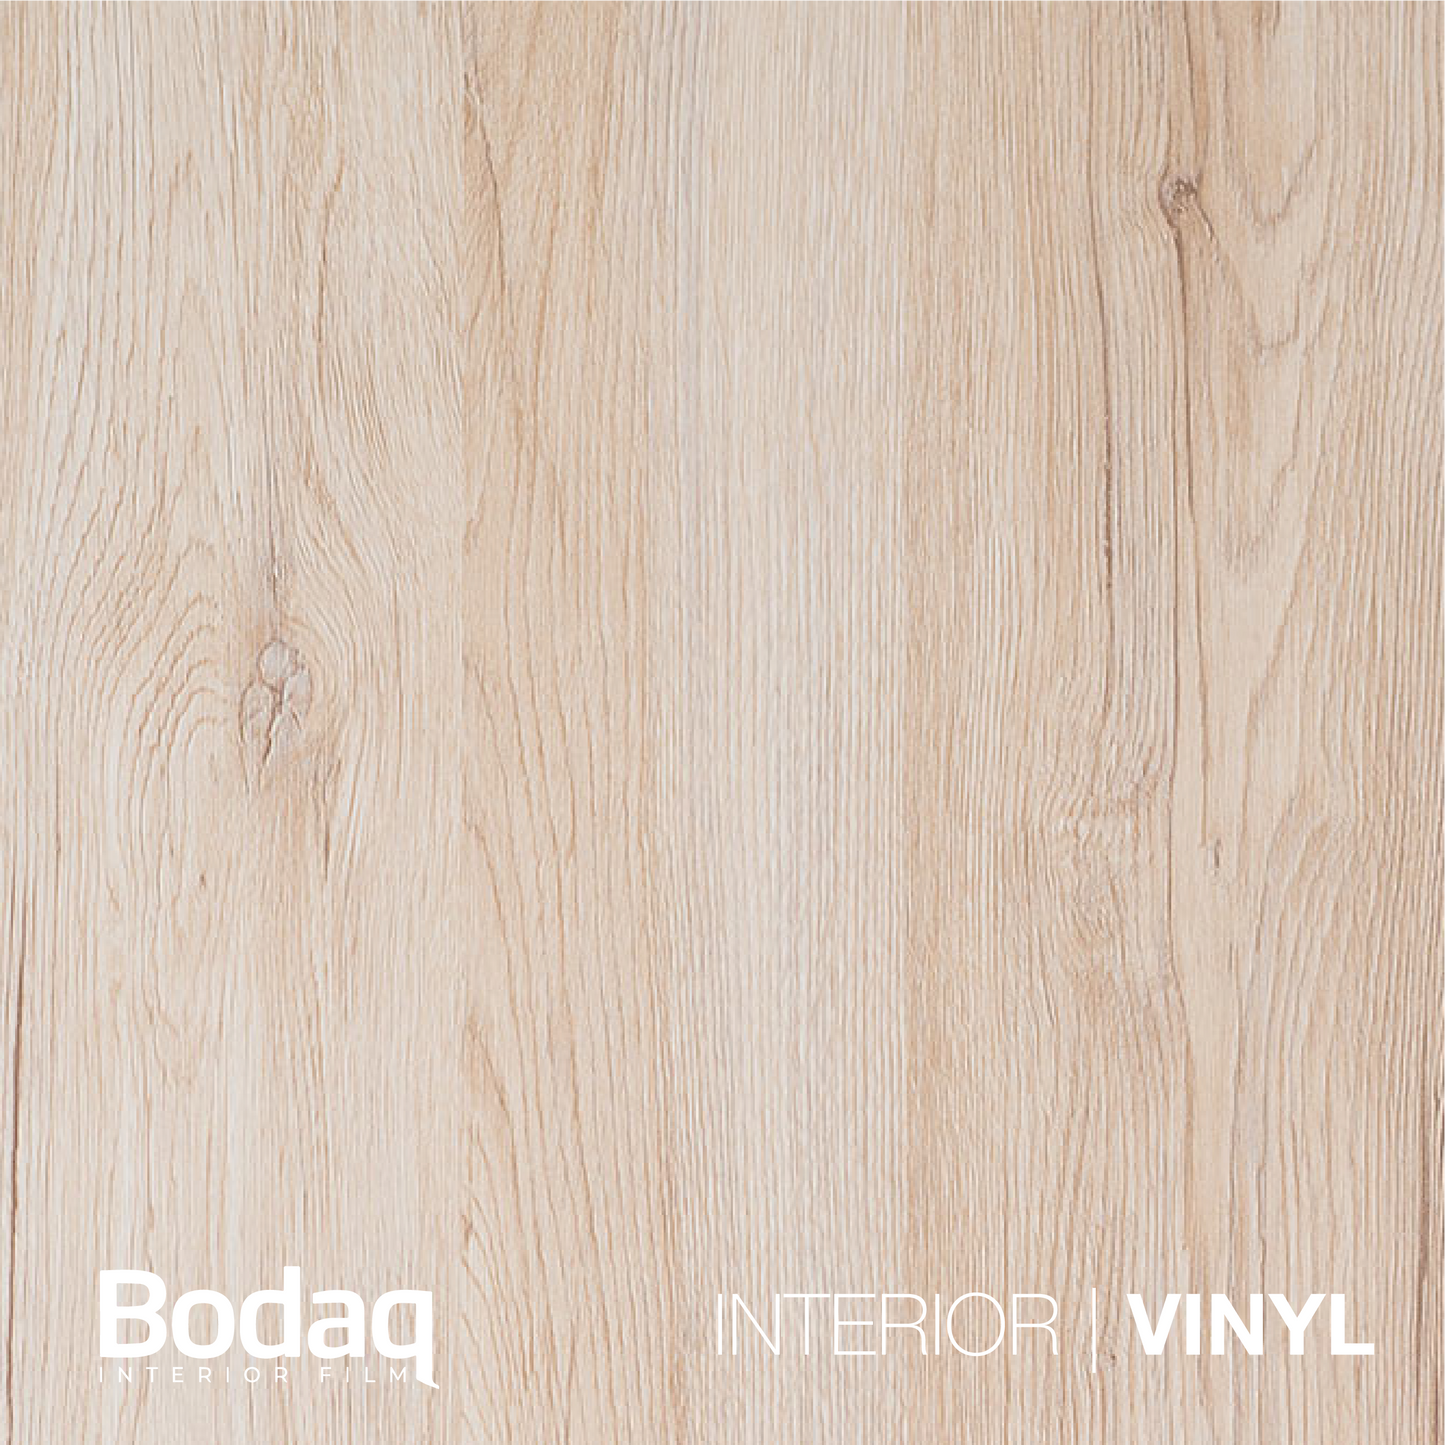 BODAQ Interior Film W945 Standard Wood - A5 Sample